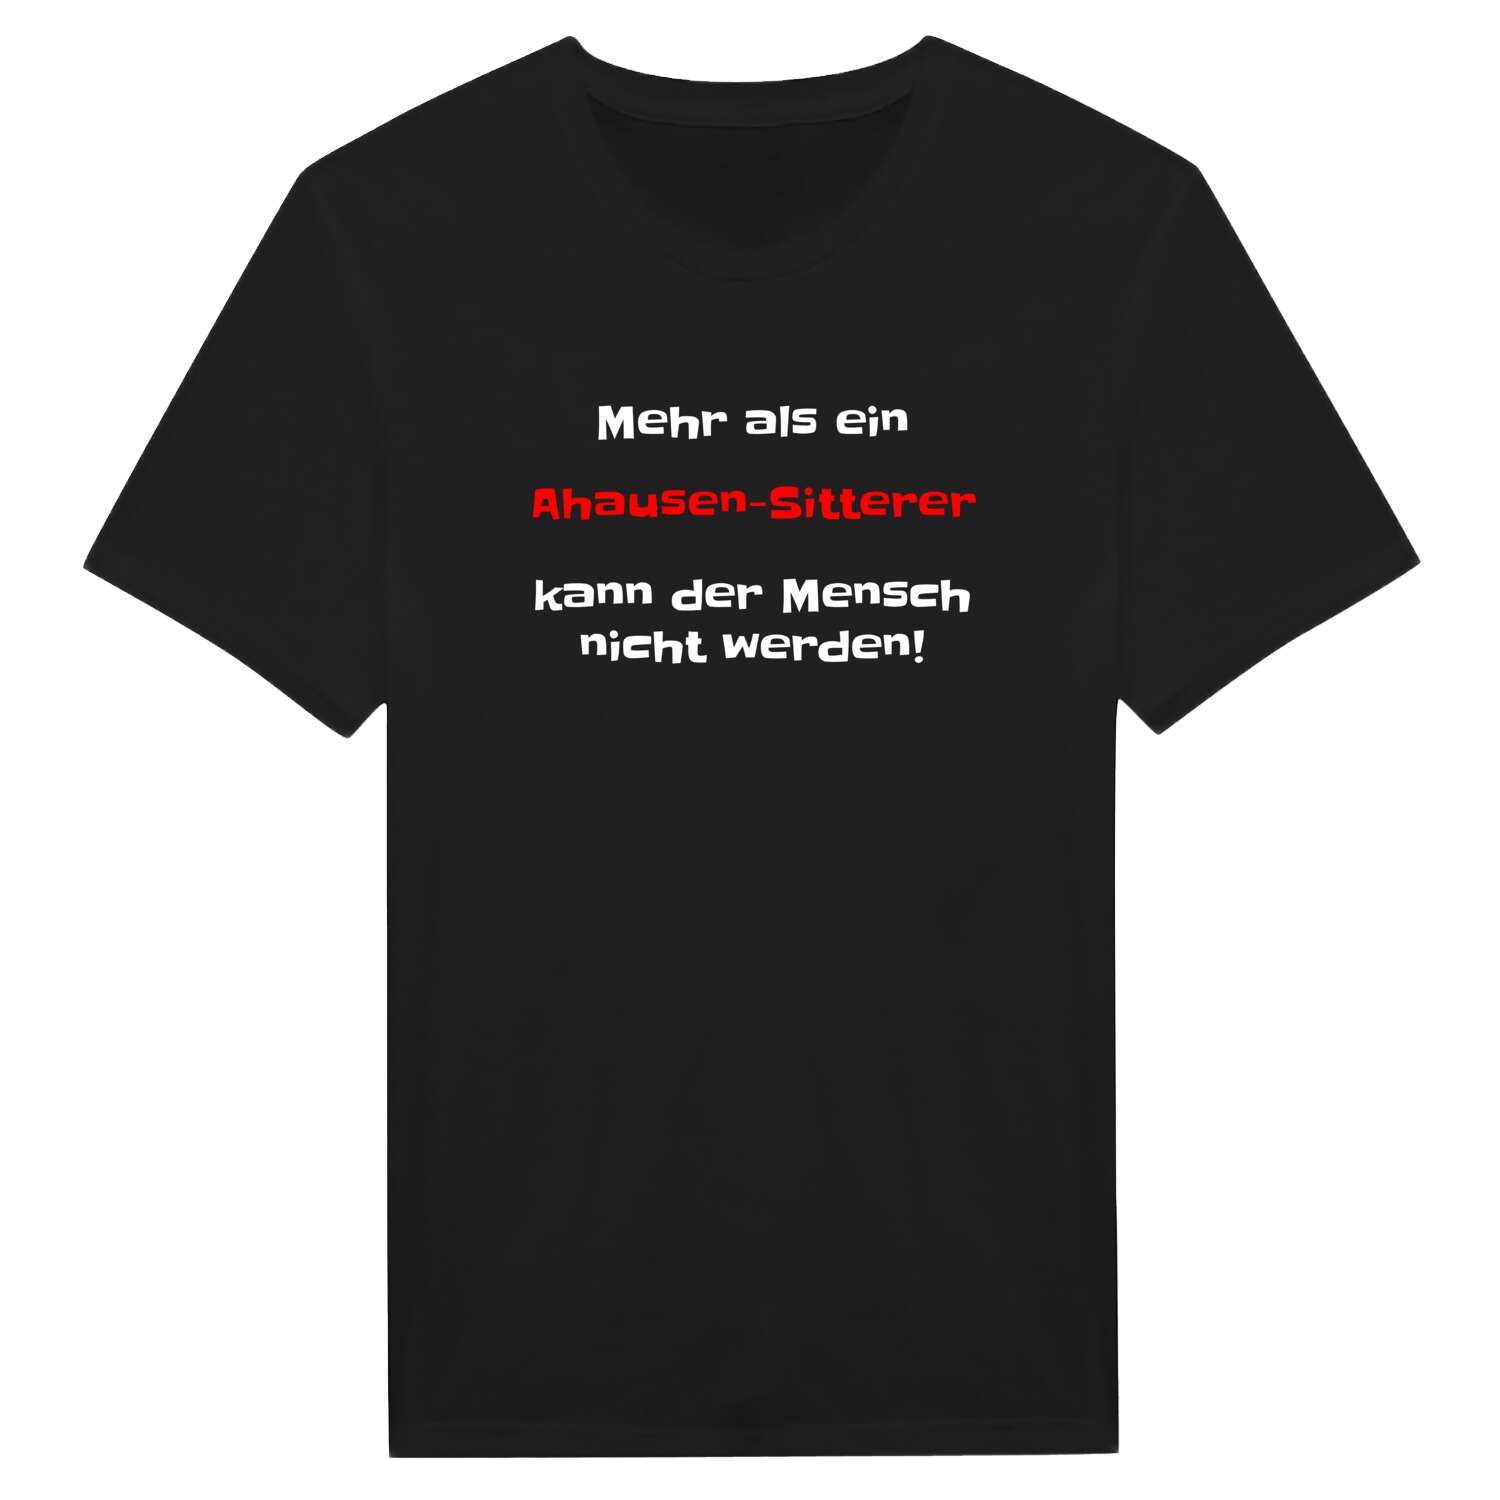 Ahausen-Sitter T-Shirt »Mehr als ein«